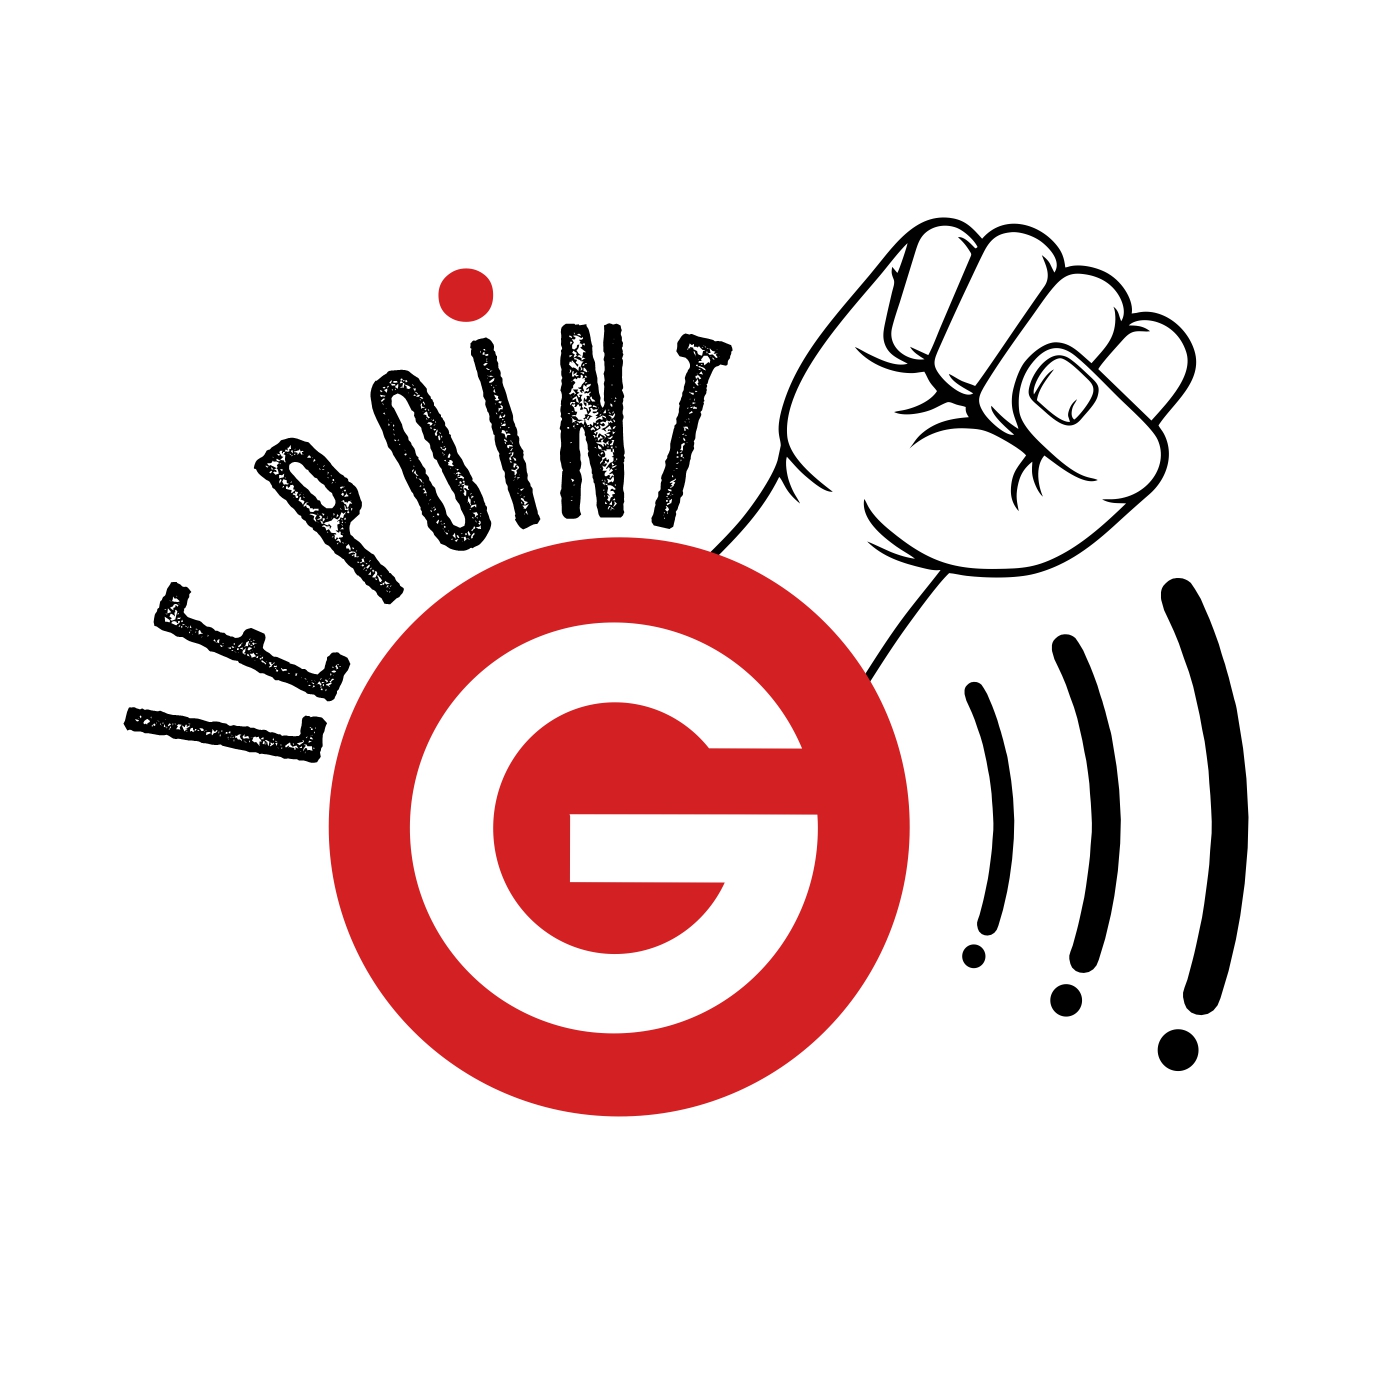 Recherche témoignages Radio G! en live 101.5FM à Angers et partout dans monde sur ce site Recherche témoignages